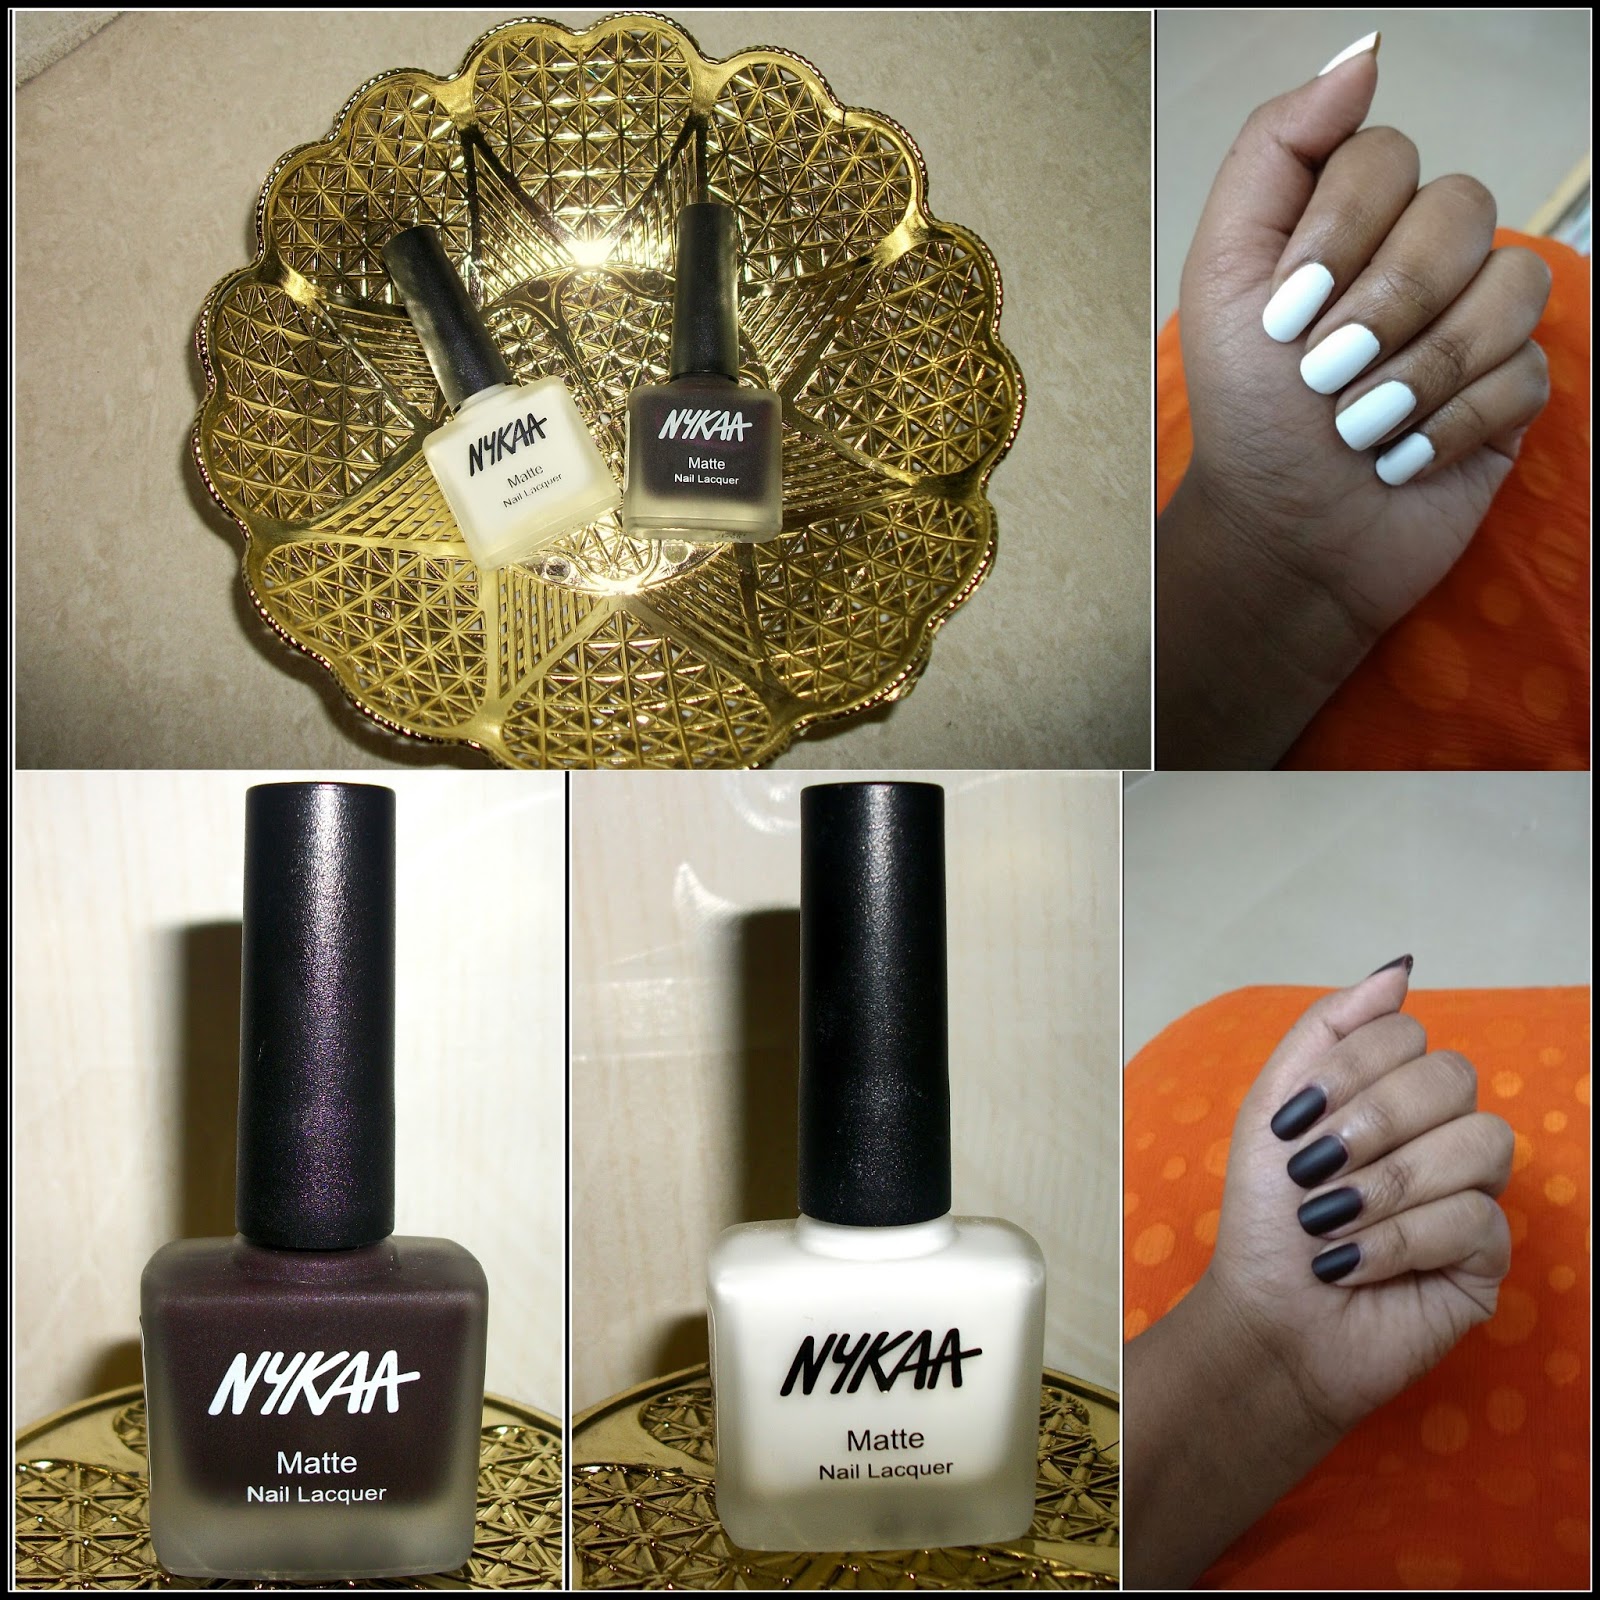 Nykaa Nail Colours Shade Details 😍 | Nail paint shades, Nail colors, Sns  nails colors